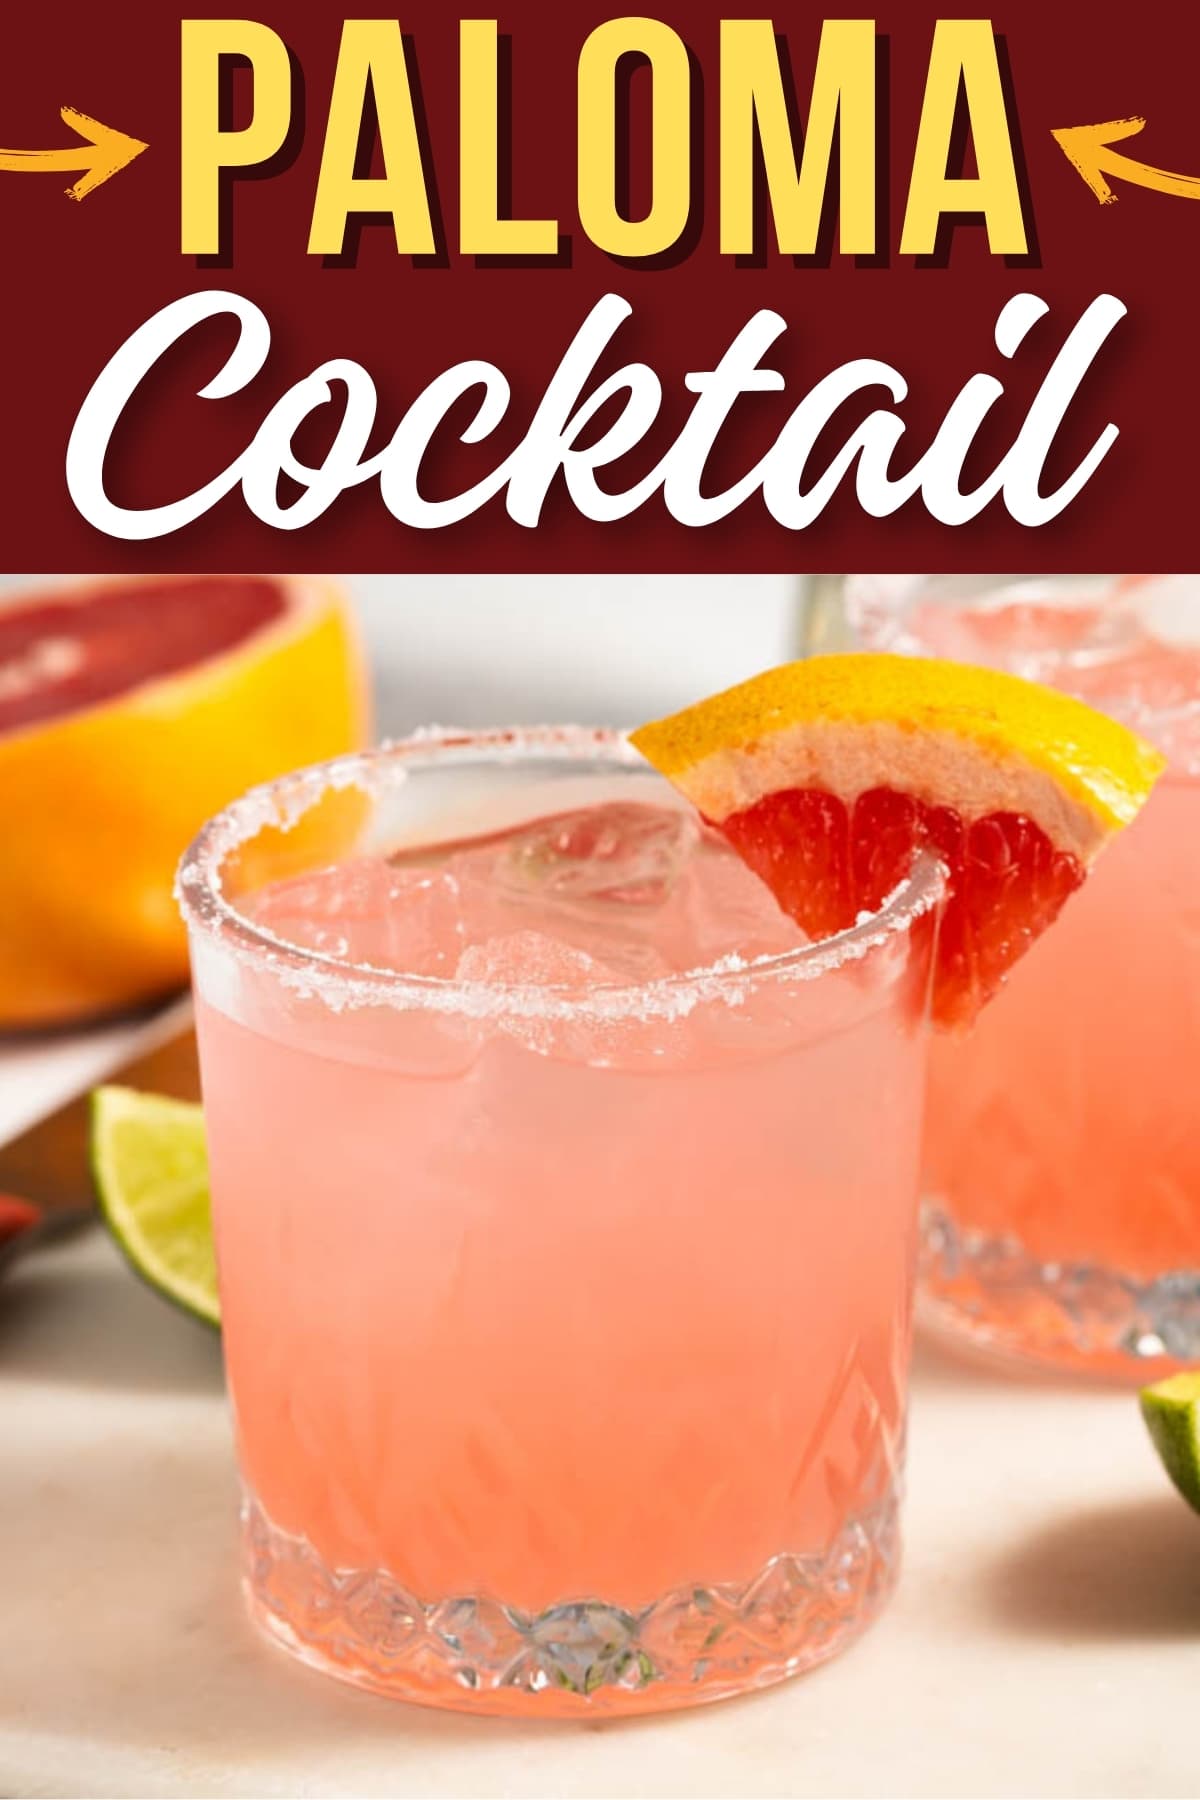 Paloma Cocktail Recipe
